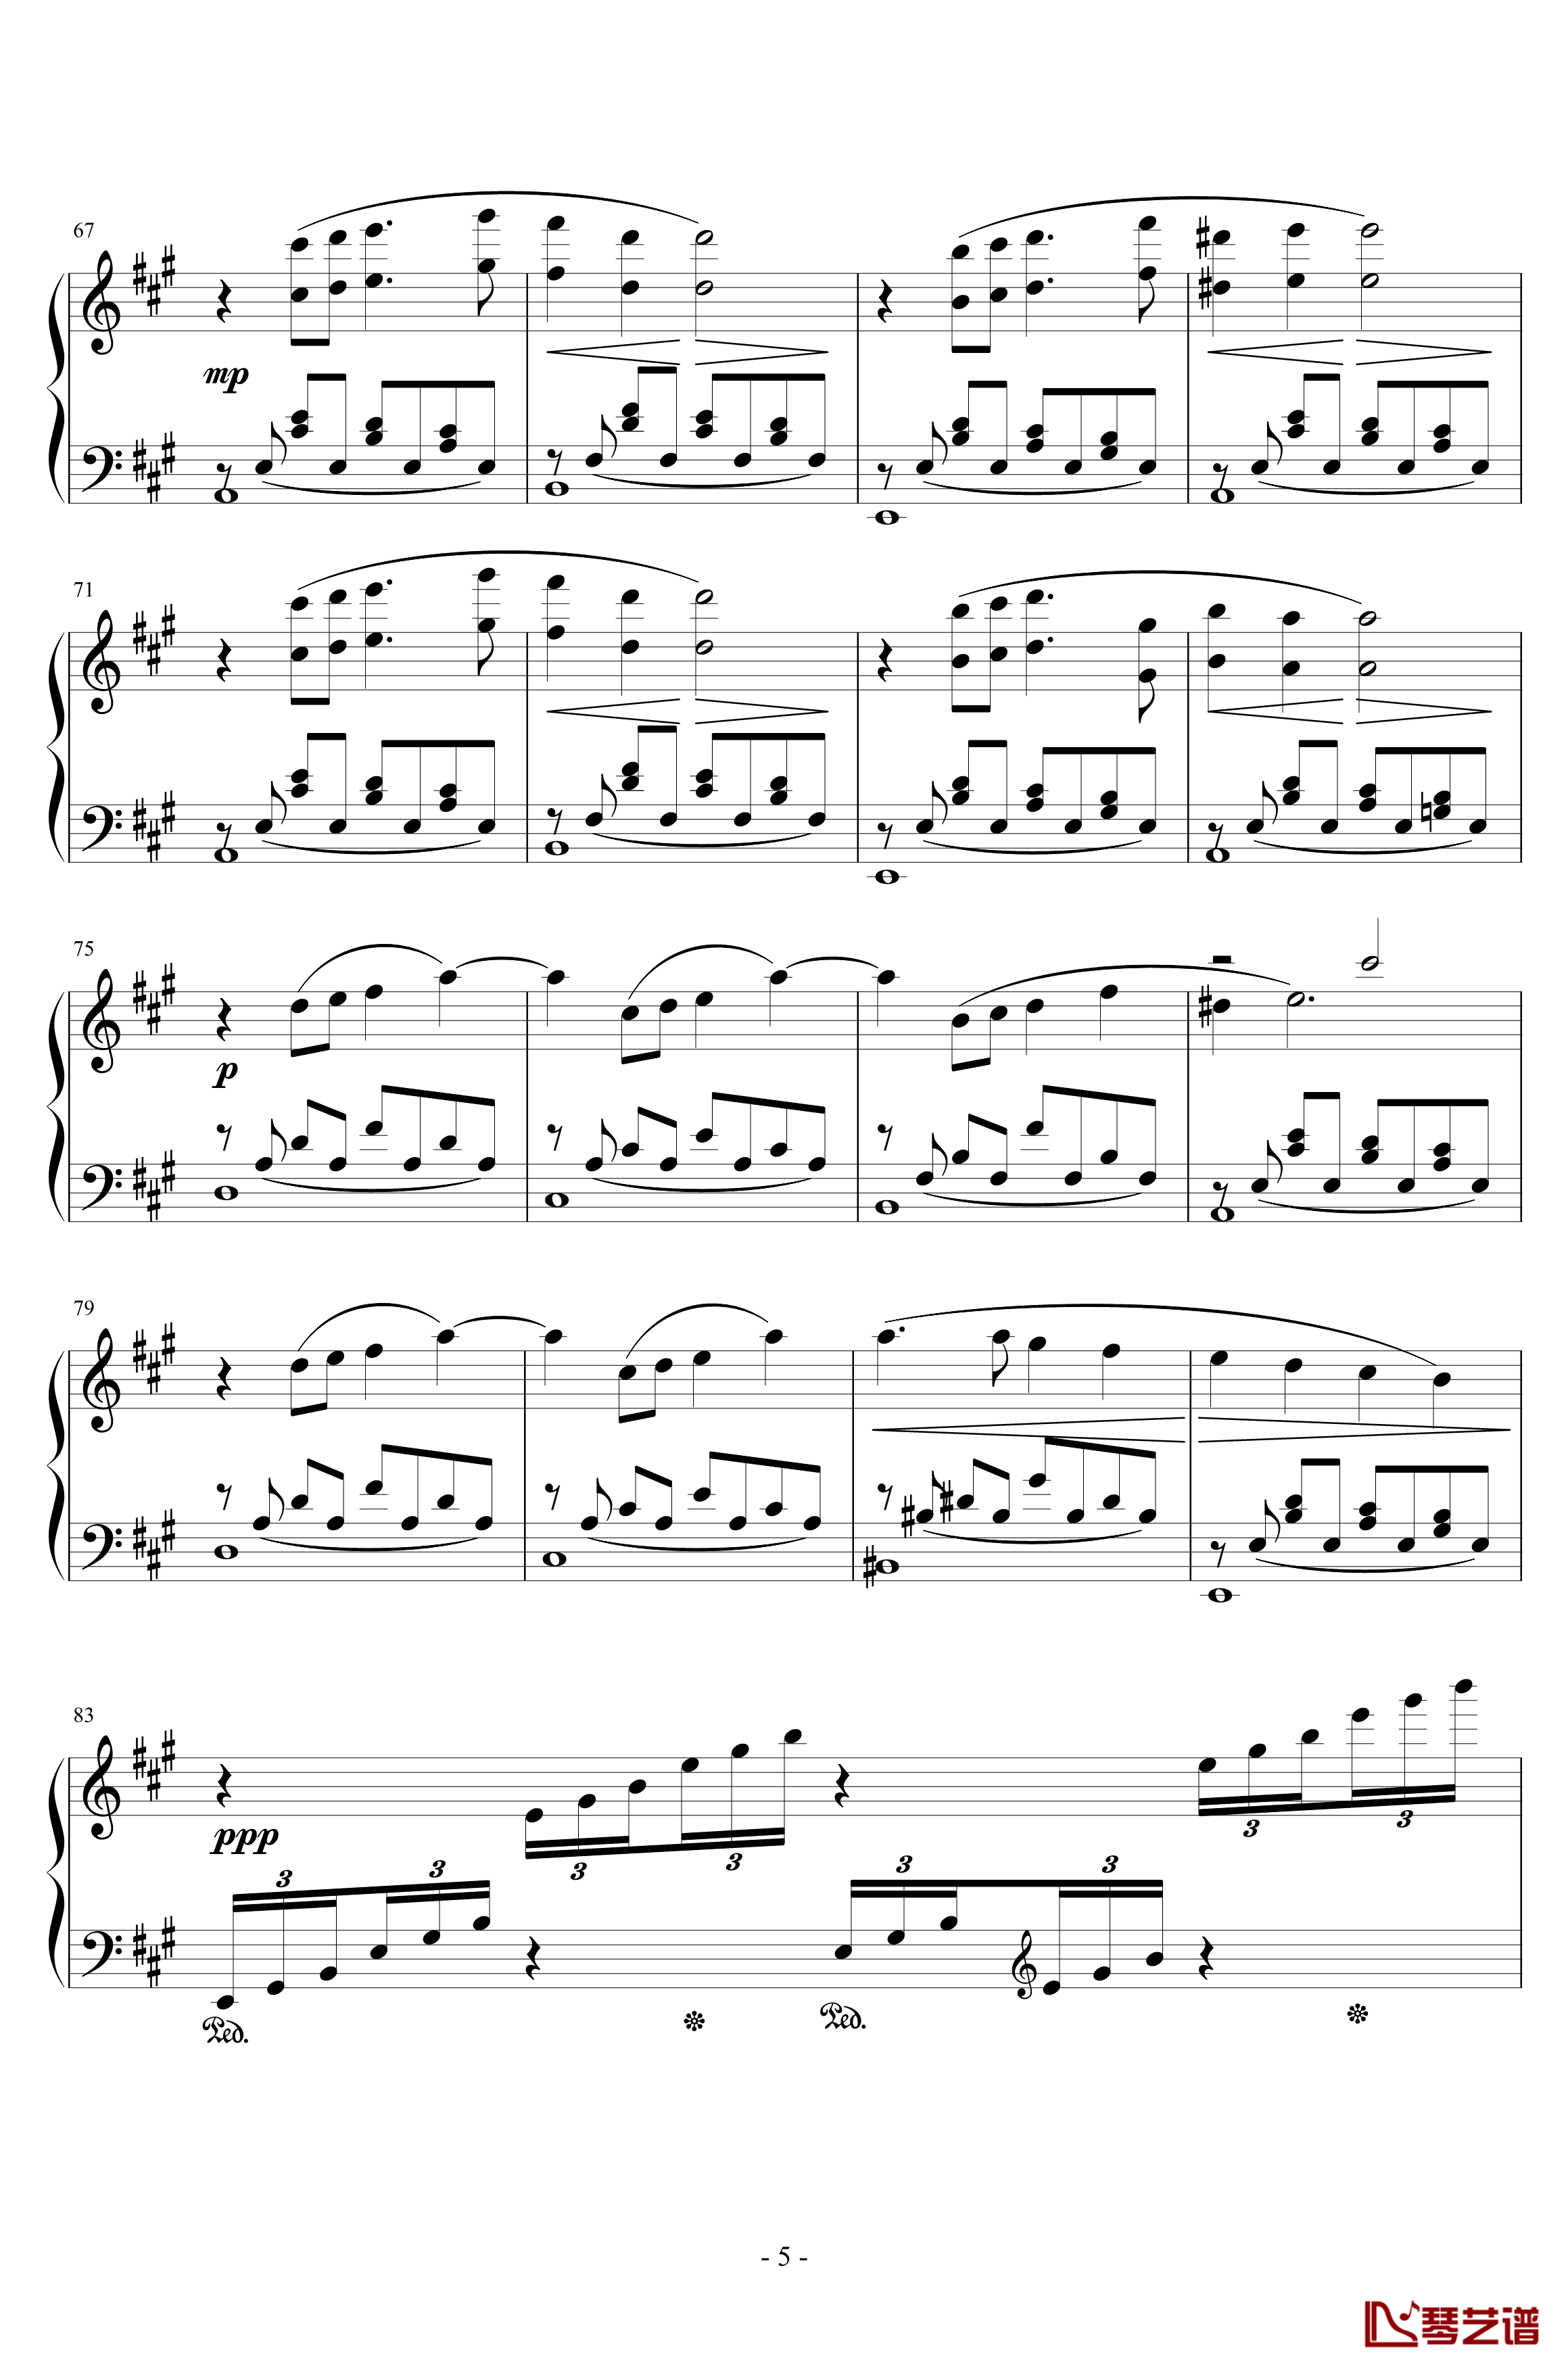 最终幻想8花园主题音乐钢琴谱-植松伸夫